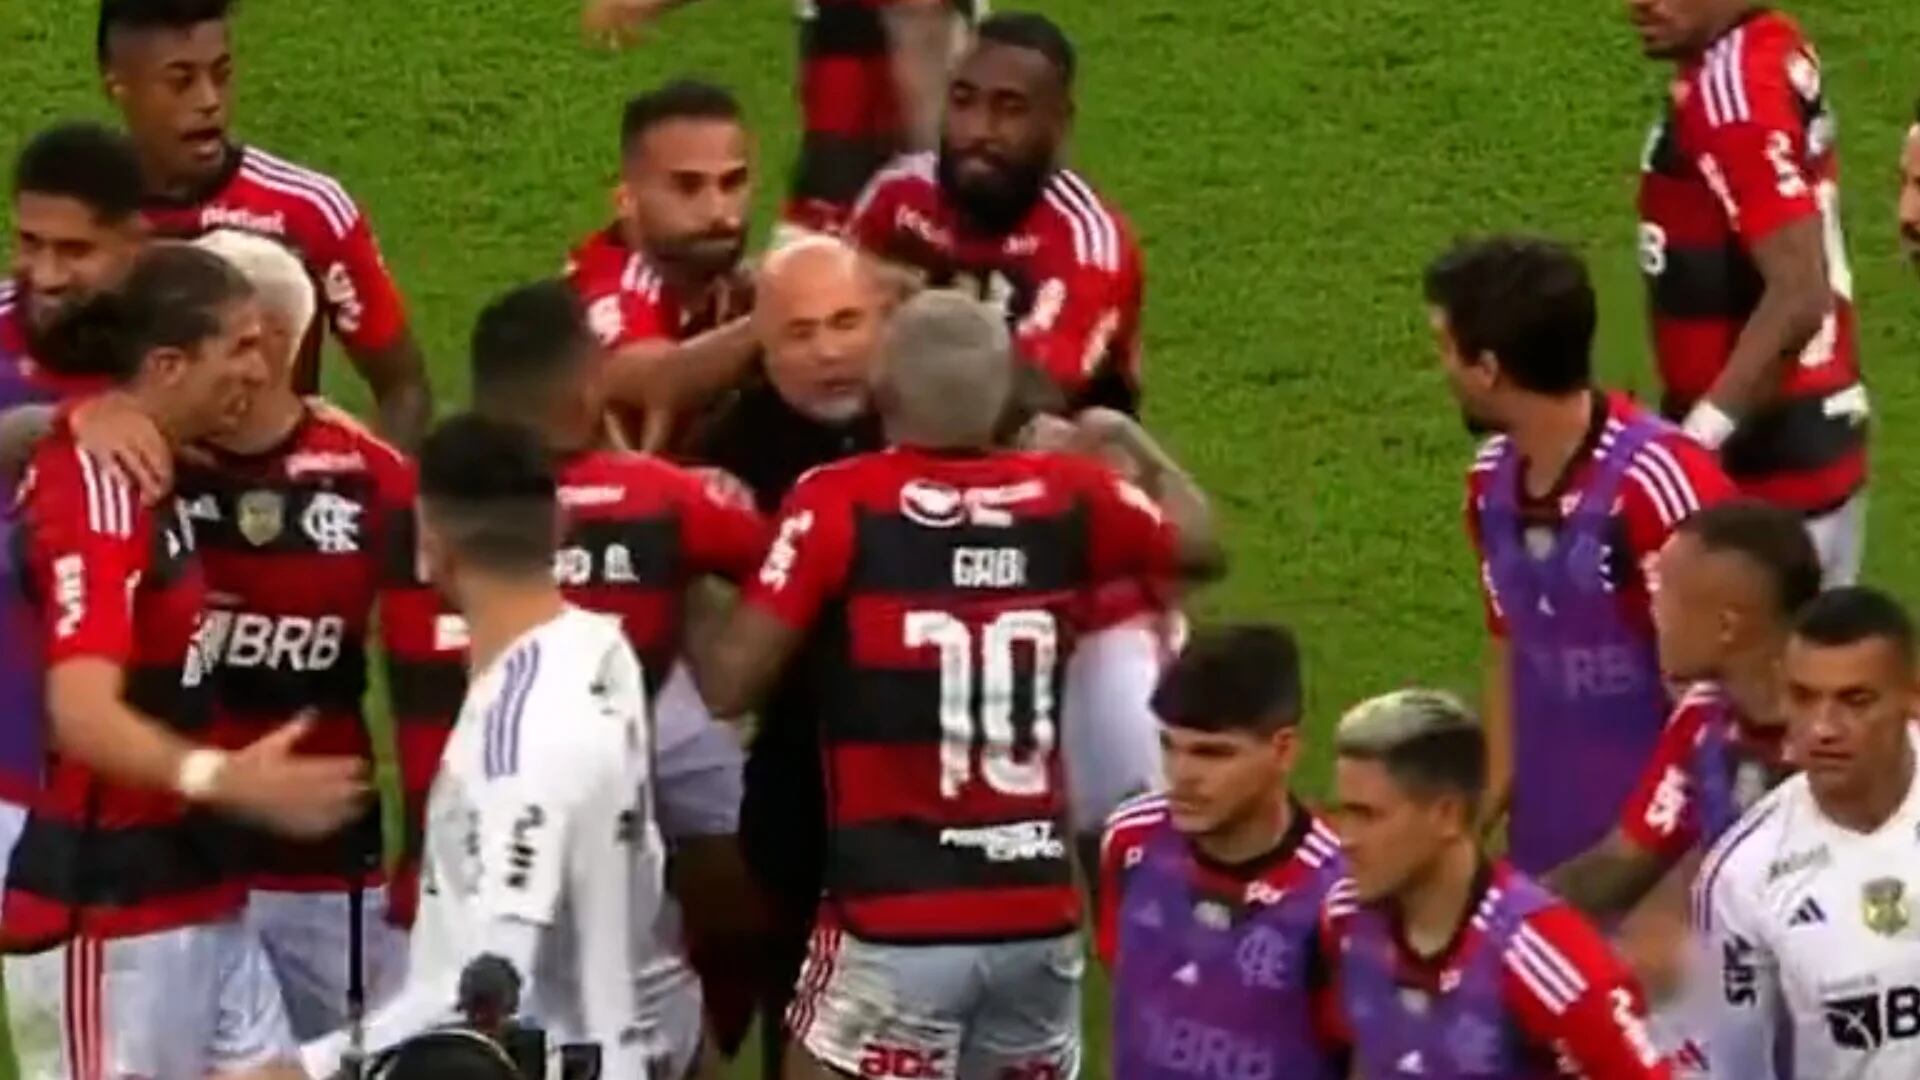 Insólito festejo: Sampaoli fue abofeteado en la cabeza por los jugadores de Flamengo en medio de múltiples conflictos      